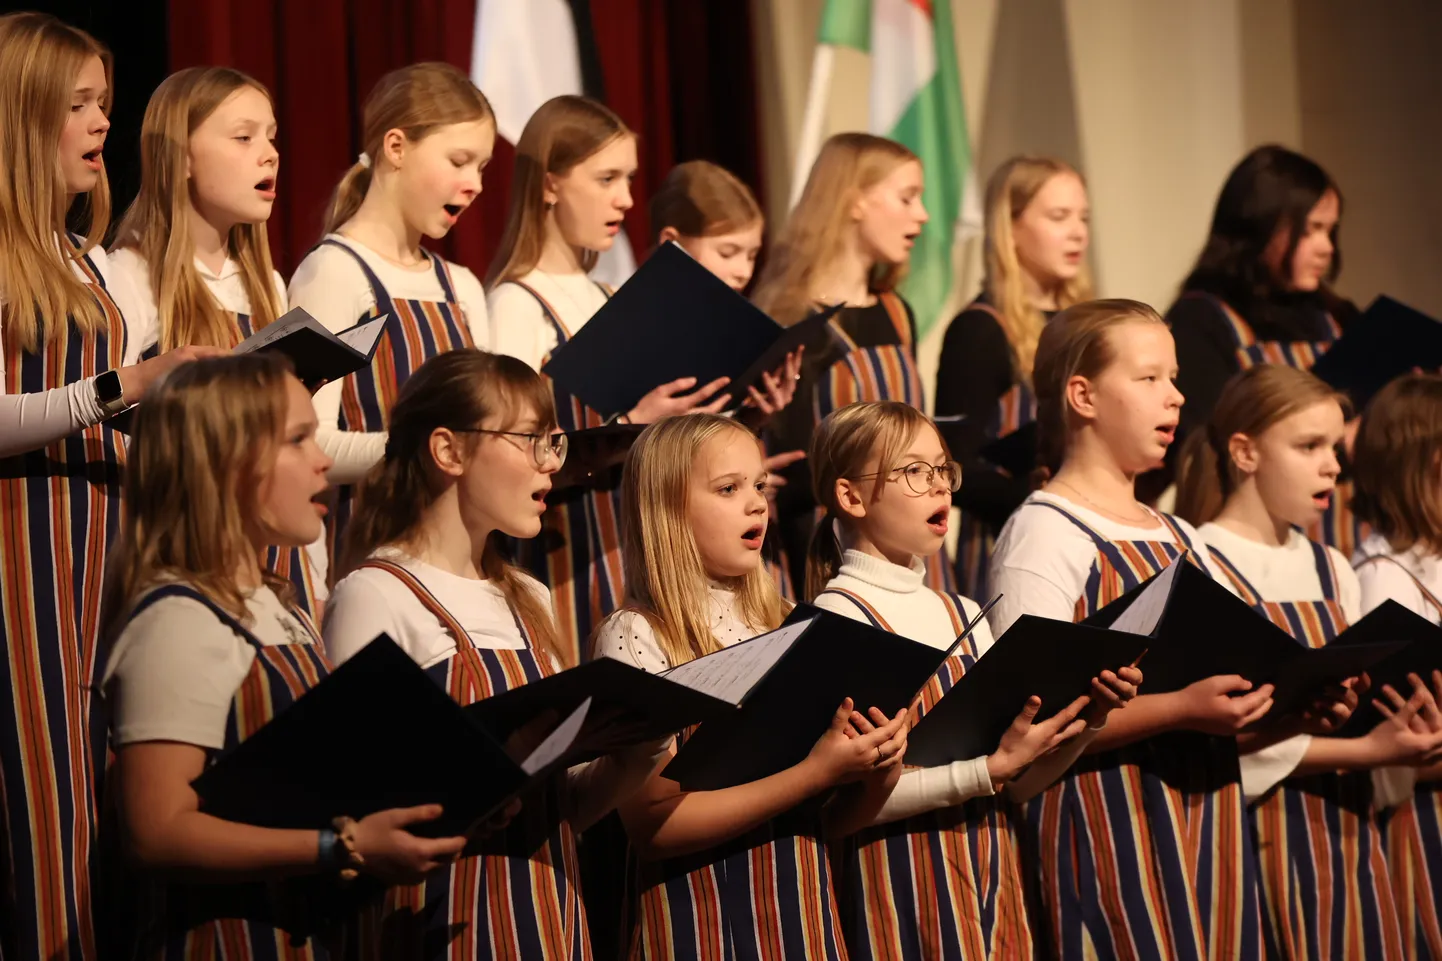 Türi kultuurikeskuses toimus Eesti vabariigi 106. aastapäevale pühendatud pidulik kontsert-aktus.